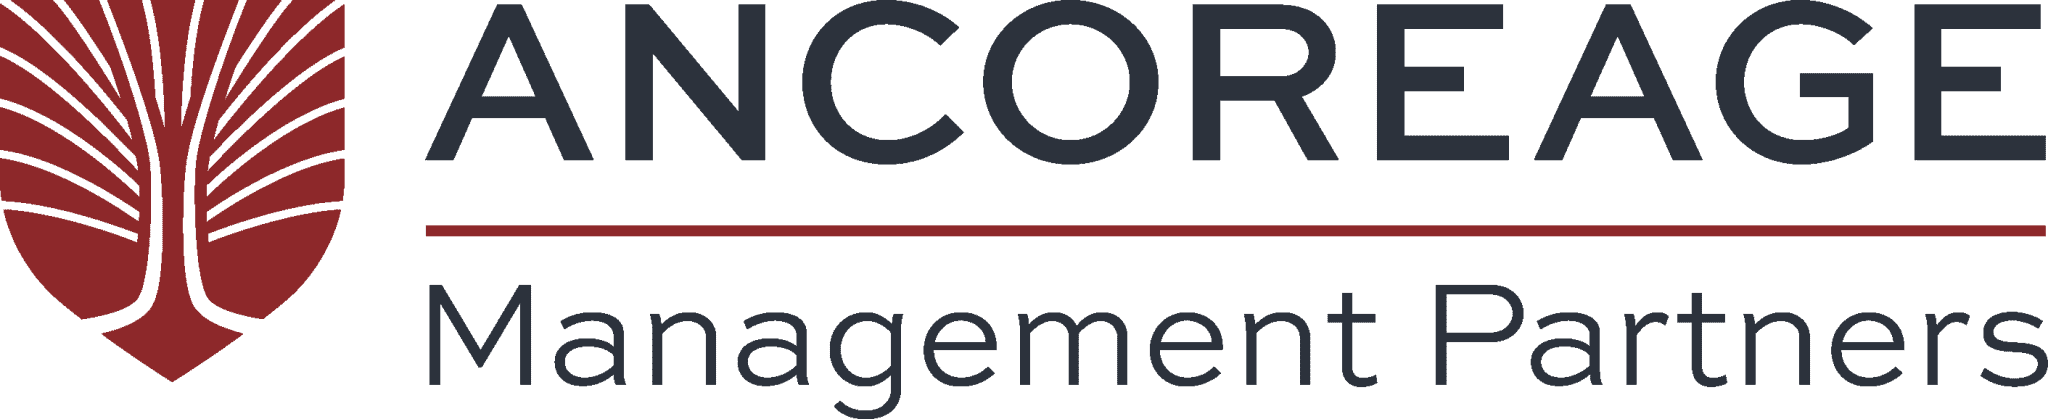 Logo of Ancoreage Management Partners